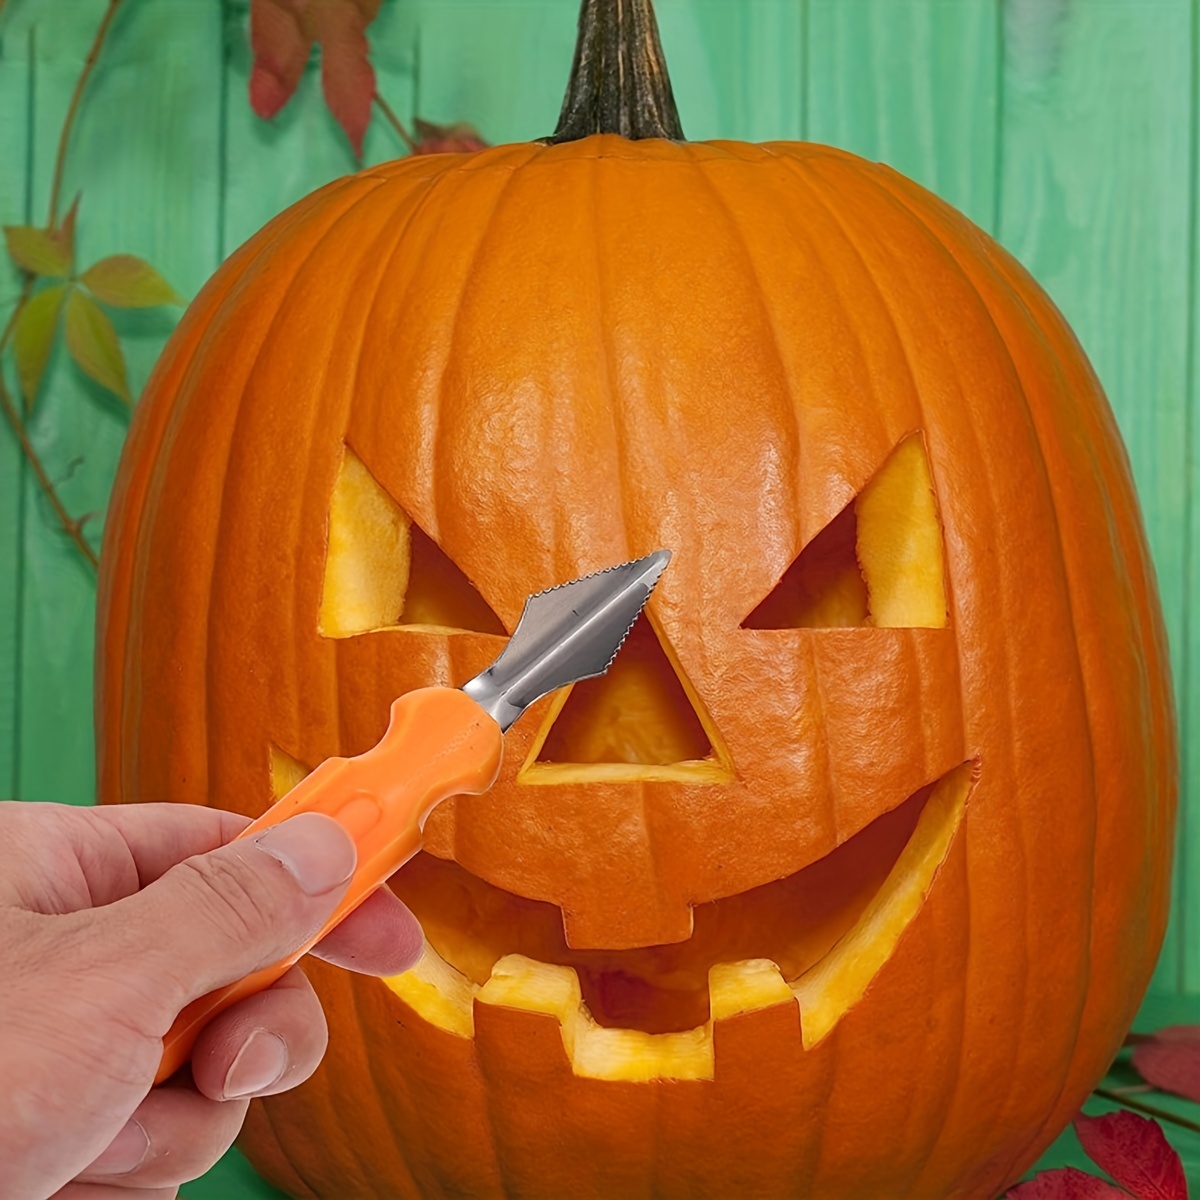 Halloween Pumpkin Carving Kit - 22 Pcs Stainless Steel Pumpkin